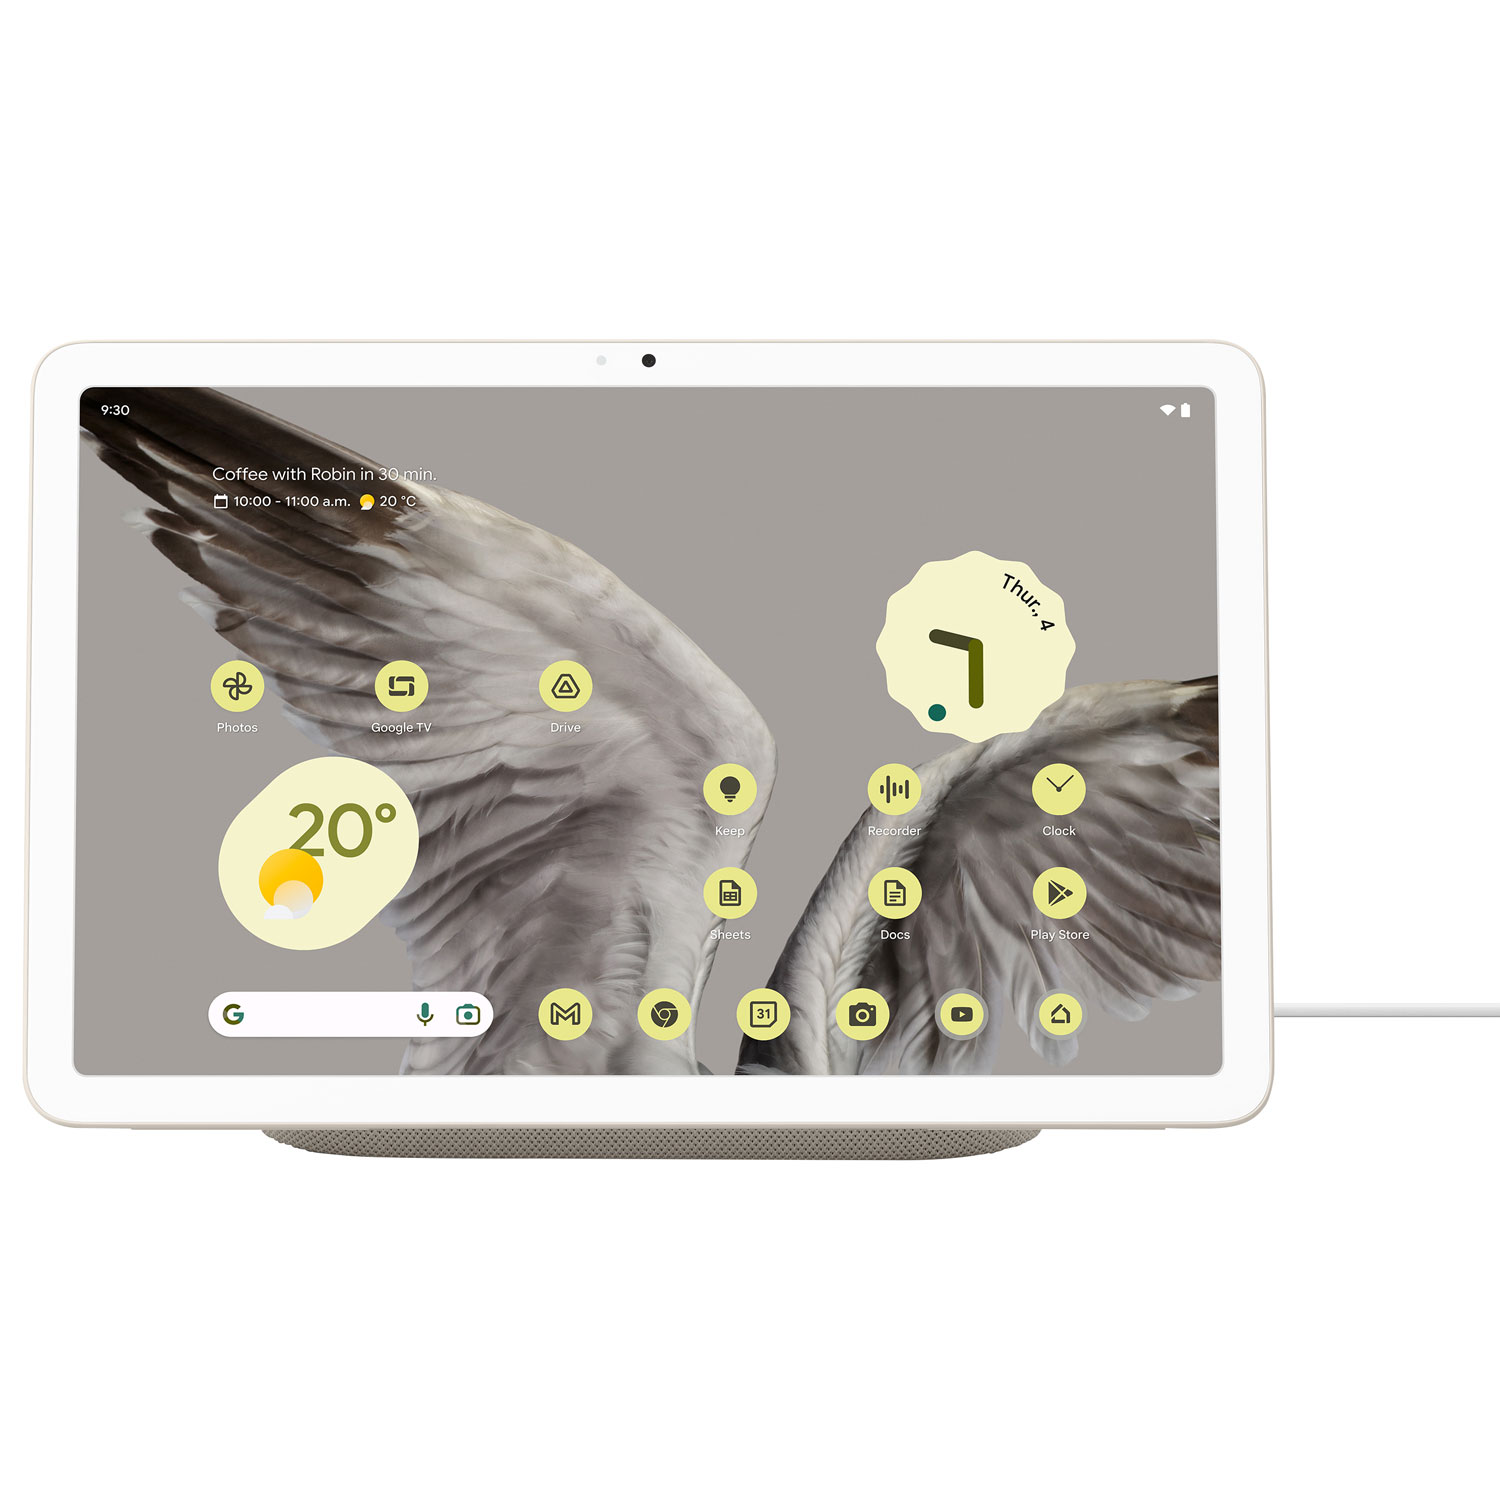 Google Pixel 11" 128GB Tablet with Charging Speaker Dock - Porcelain